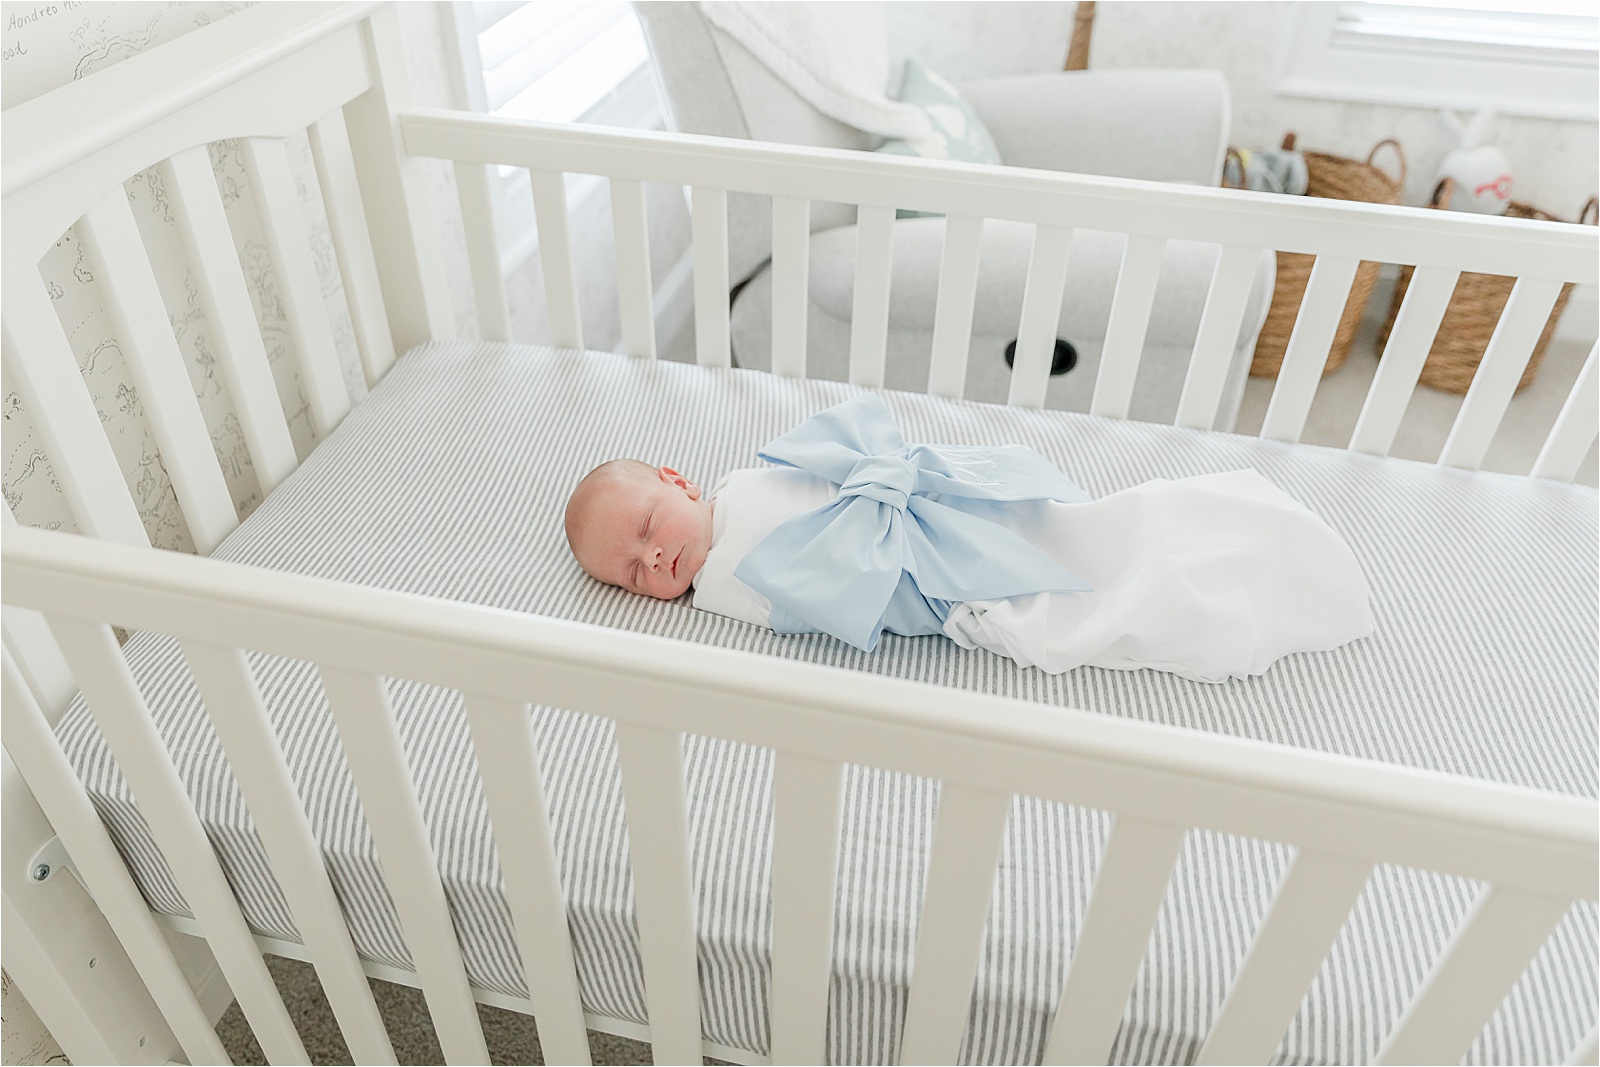 sleeping newborn in crib